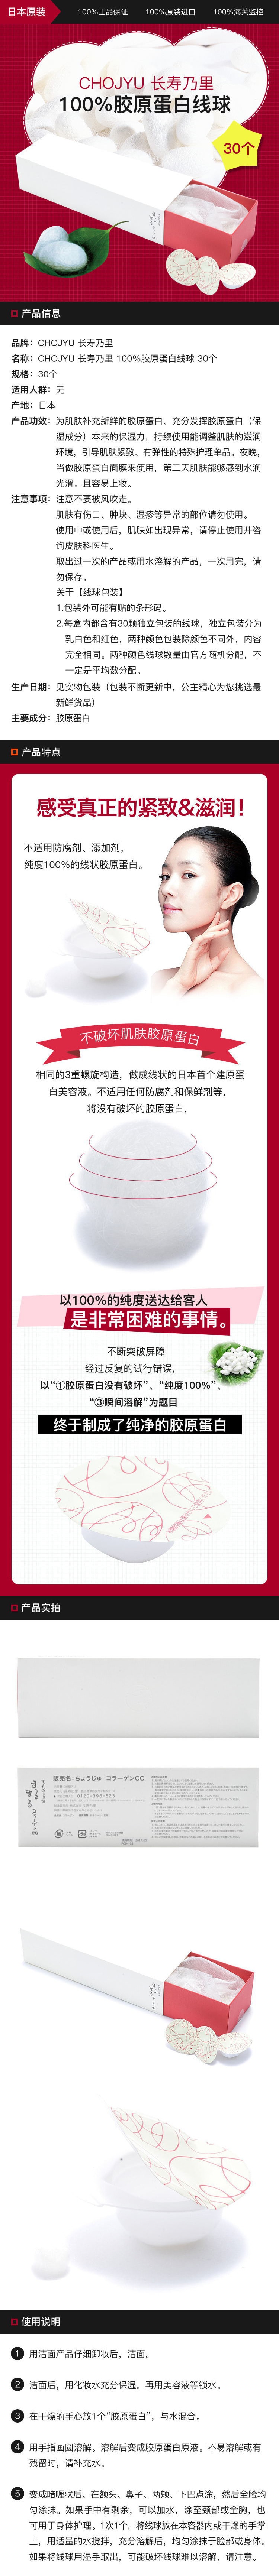 [日本直邮] CHOJYU 长寿乃里 100%胶原蛋白线球 30个(30天用量)